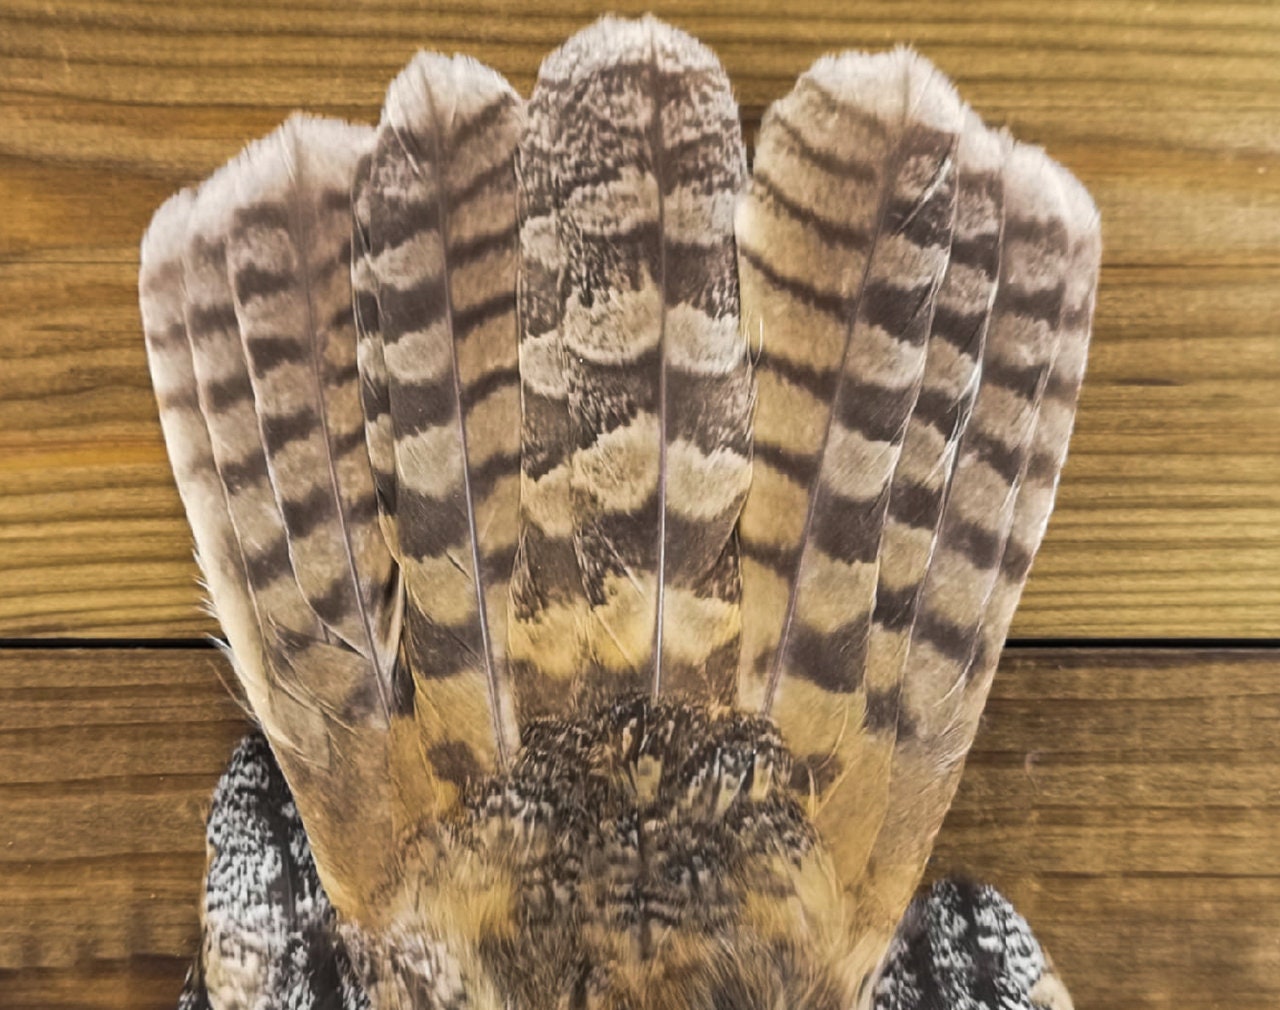 Eared owl wings. Eared owl taxidermy. Real eared owl wings. | Etsy